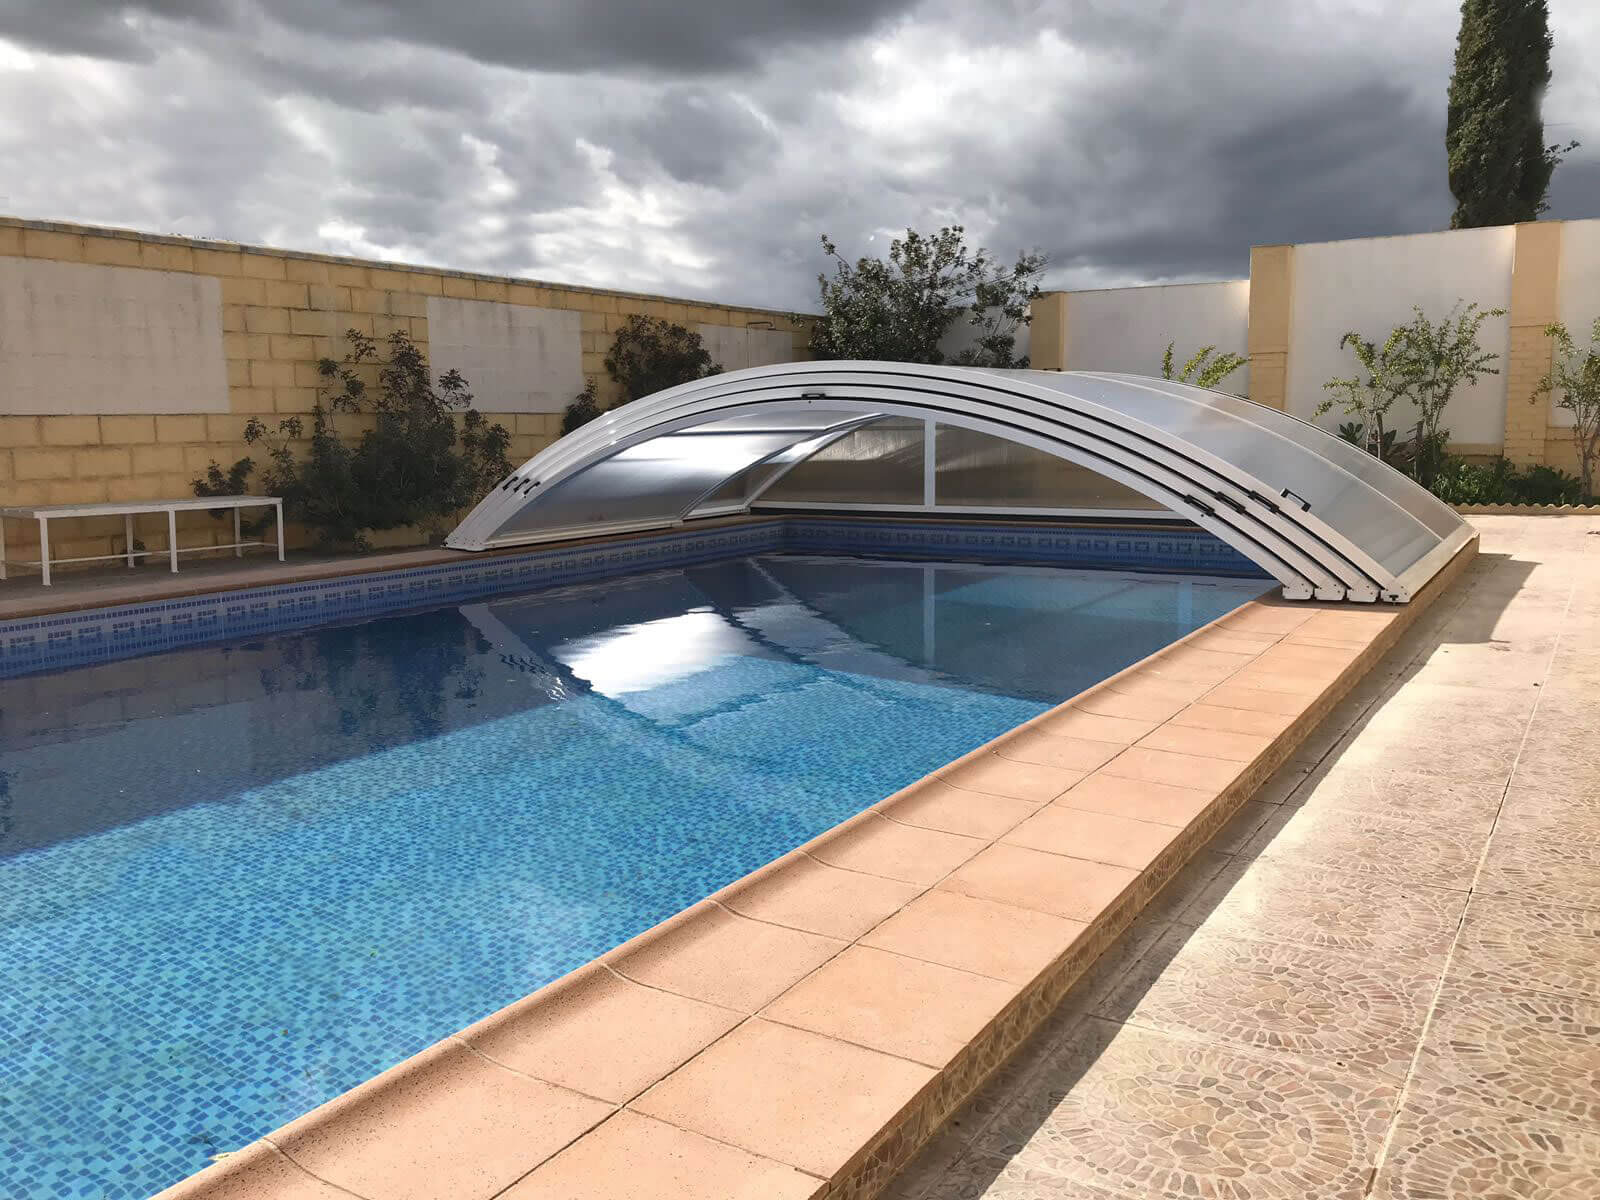 Cubierta Teide: Cubierta baja y telescópica para piscina en Sevilla abierta